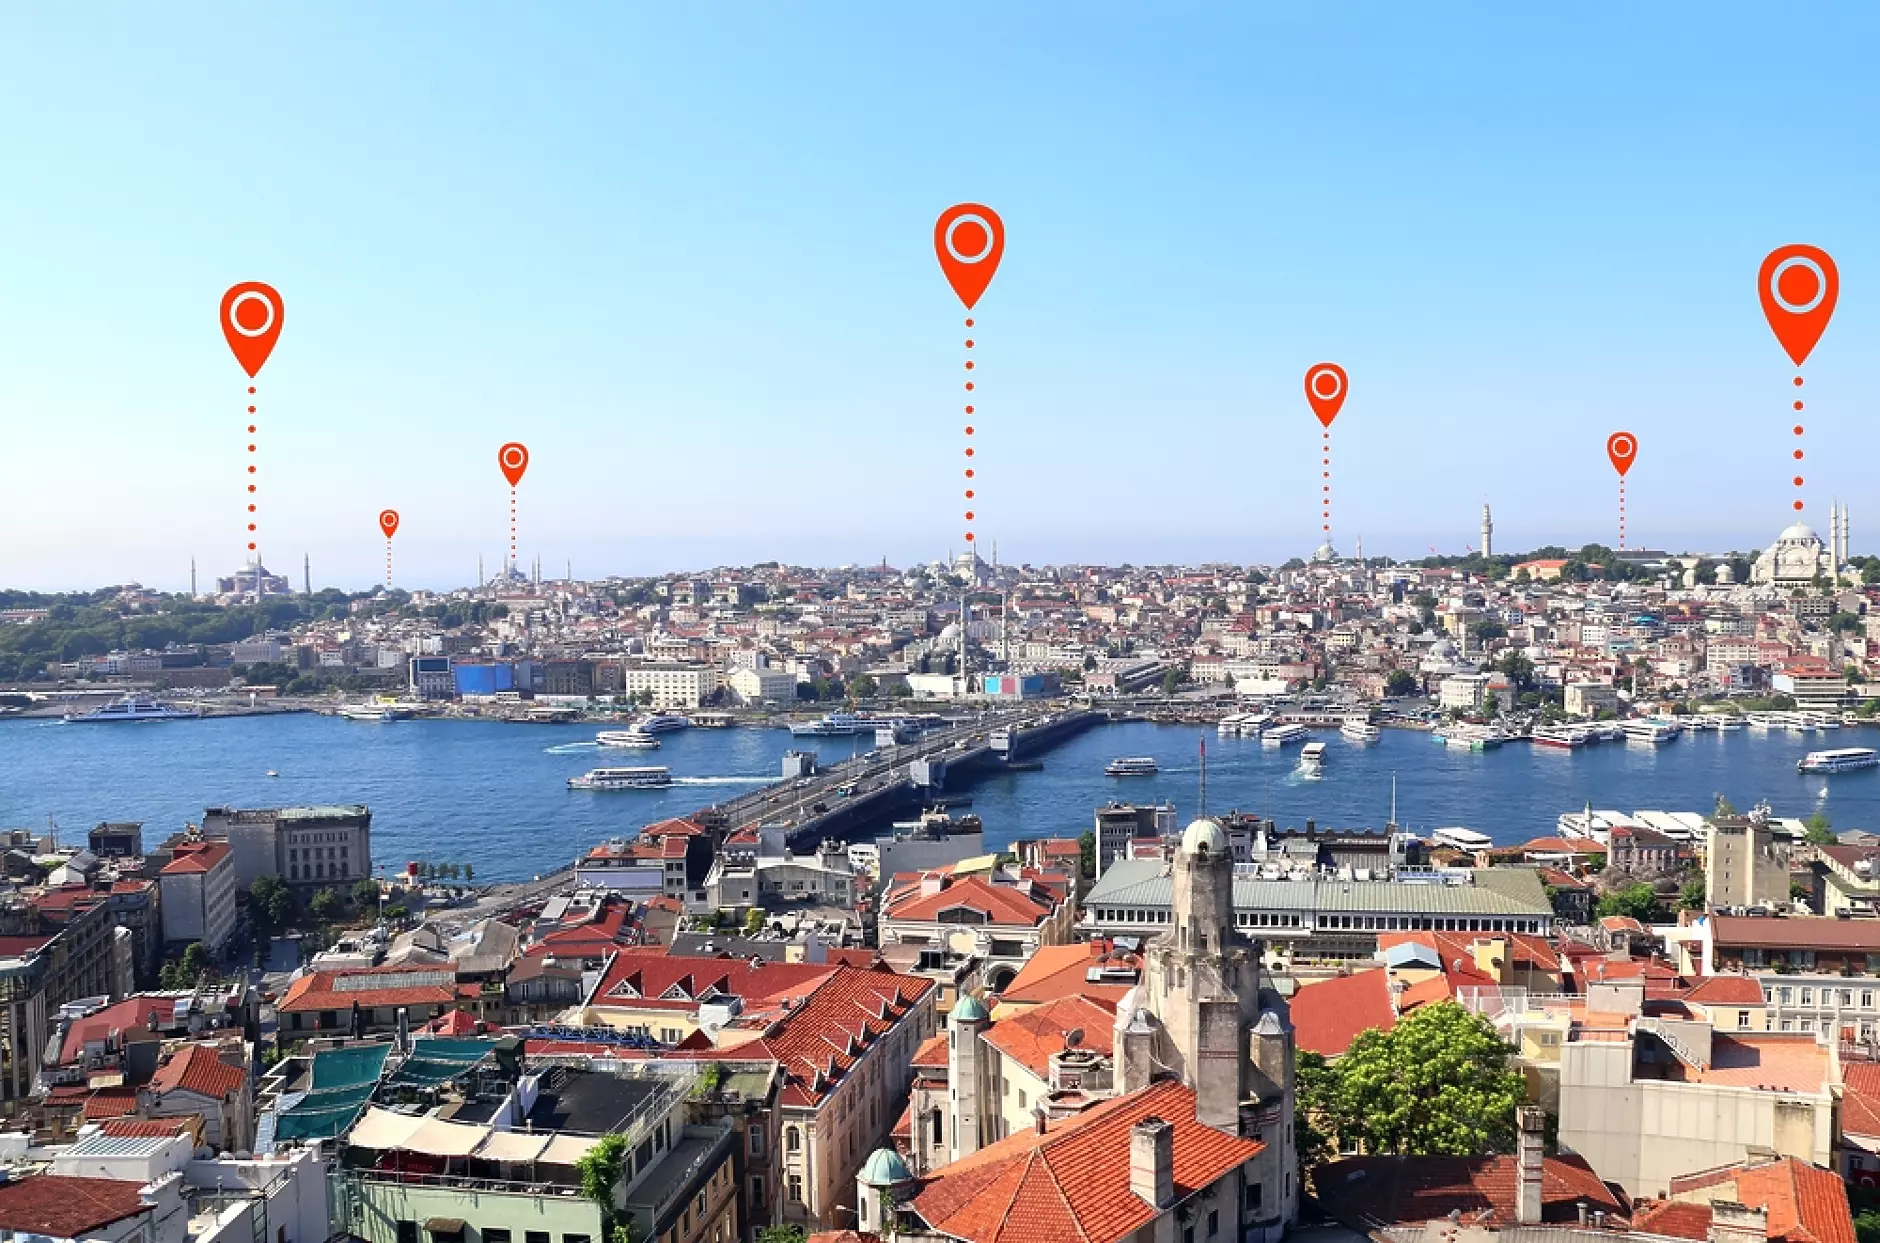 Система за позициониране локализира обекти с точност до сантиметър в градска среда